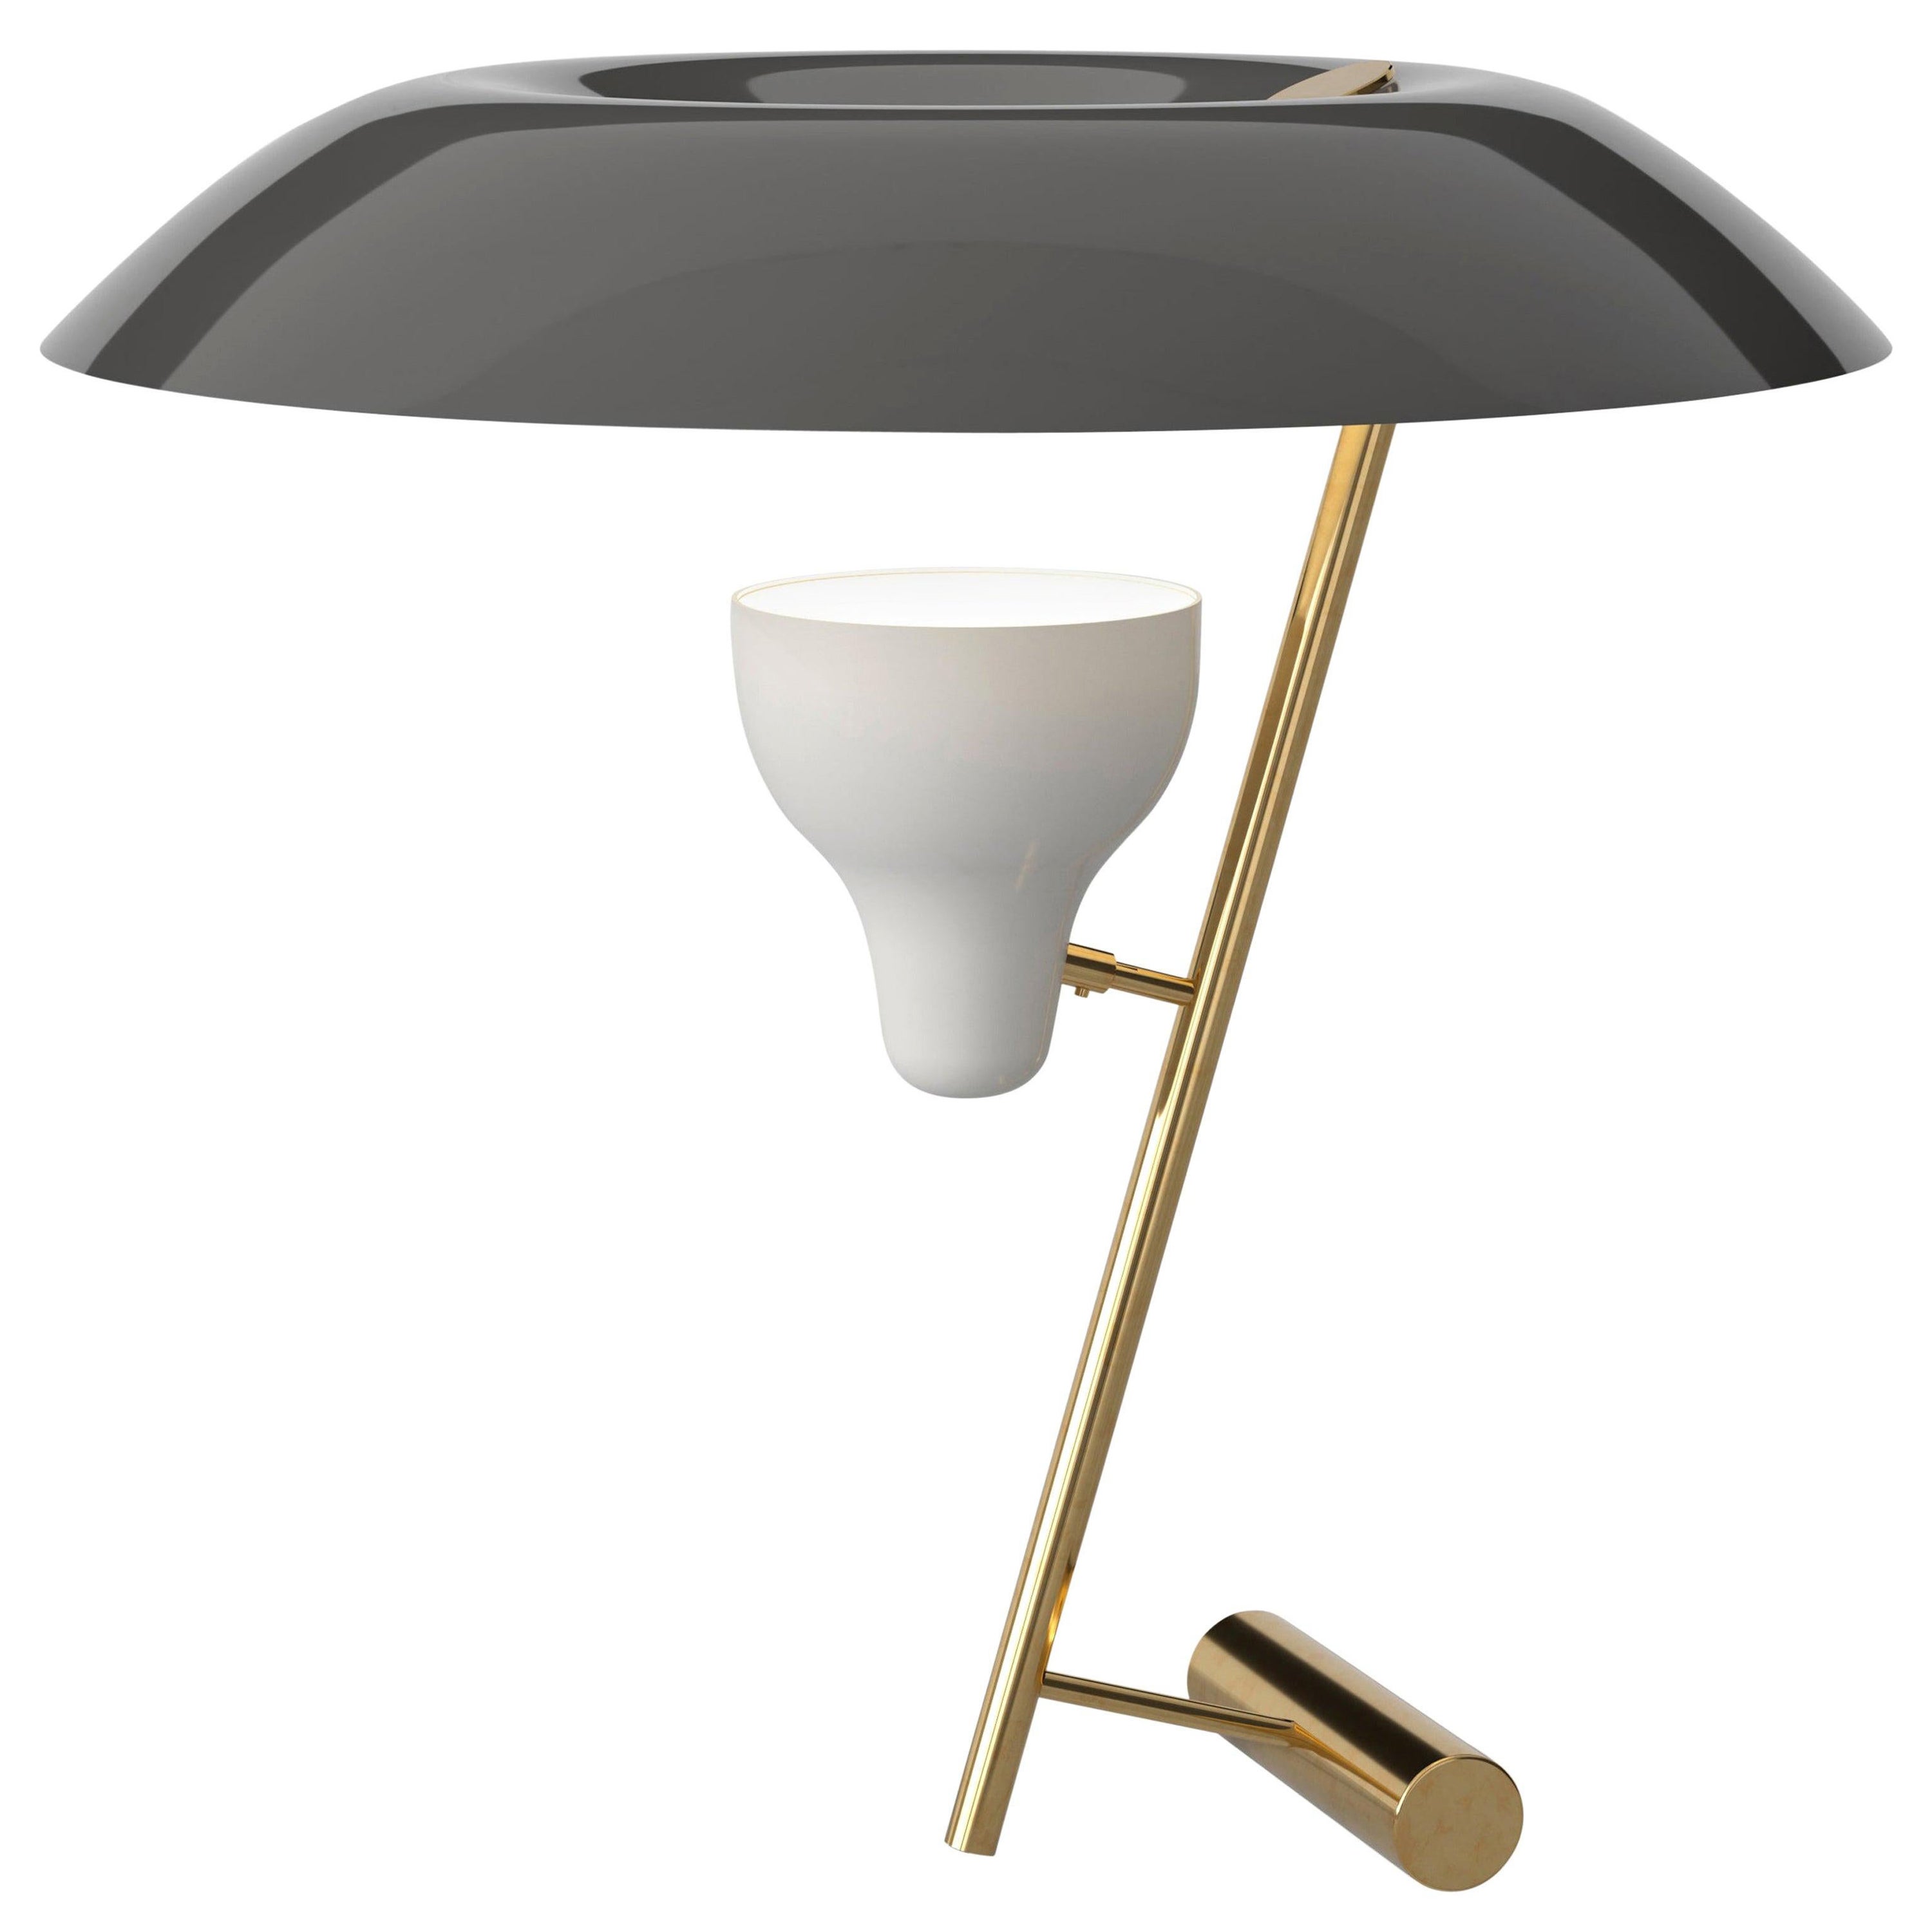 Gino Sarfatti-Lampe Modell 548 aus poliertem Messing mit grauem Waschbecken von Astep